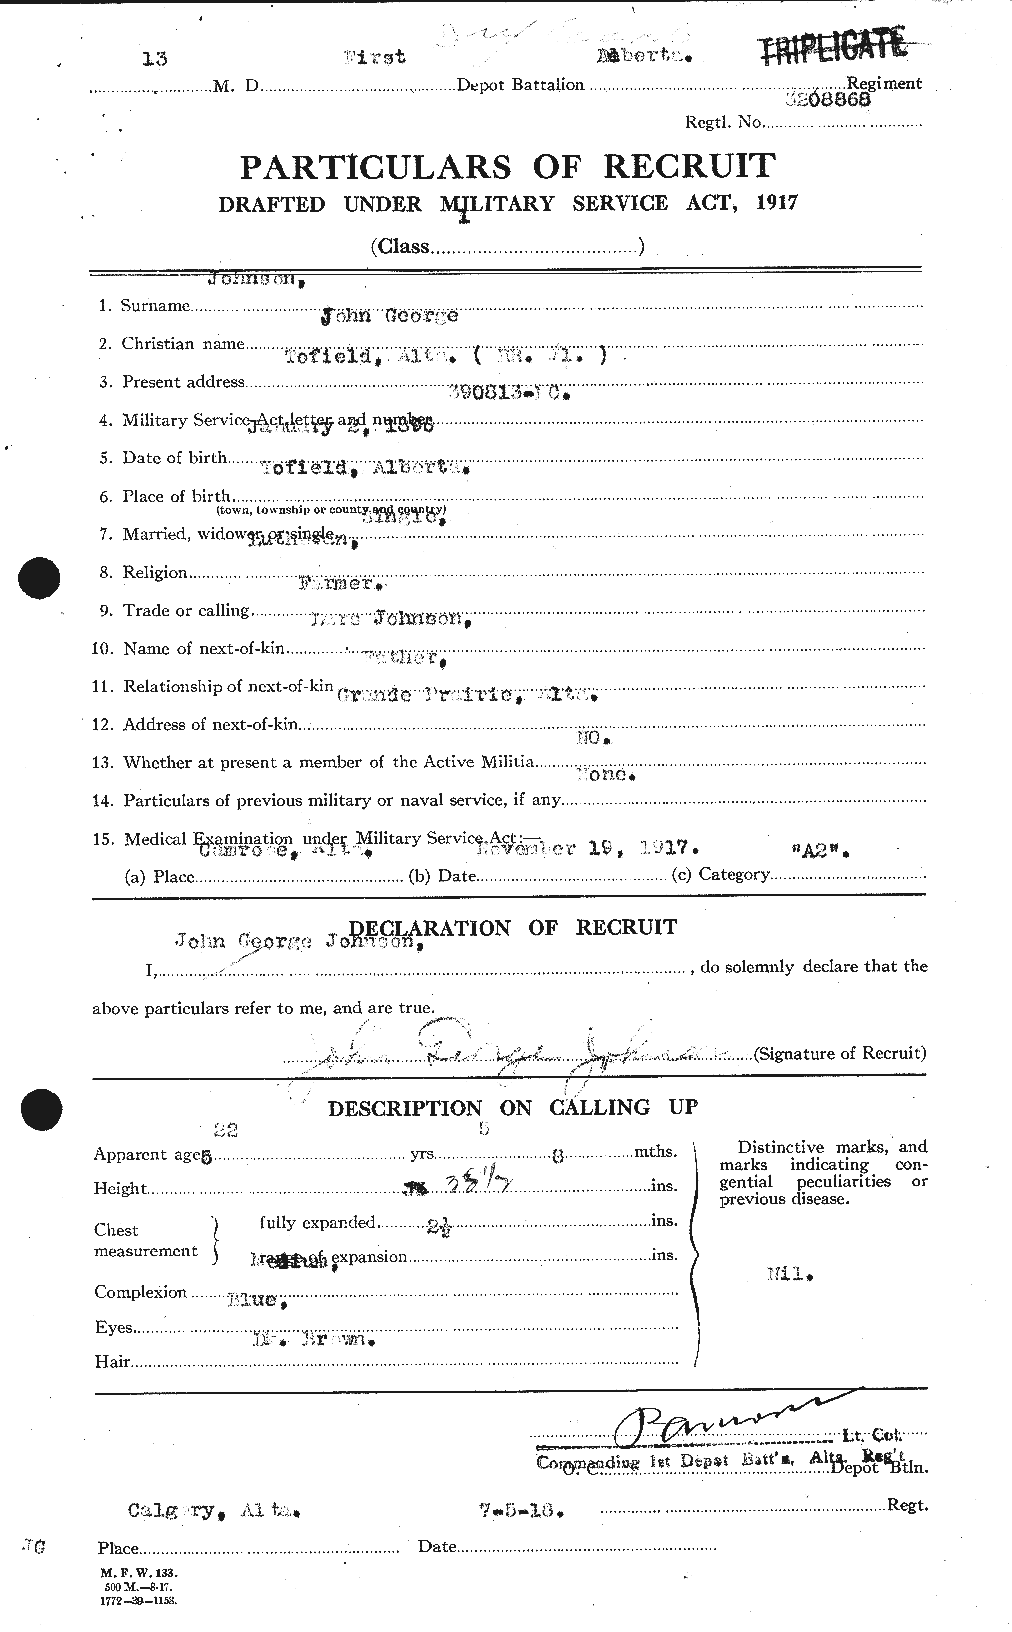 Dossiers du Personnel de la Première Guerre mondiale - CEC 421926a